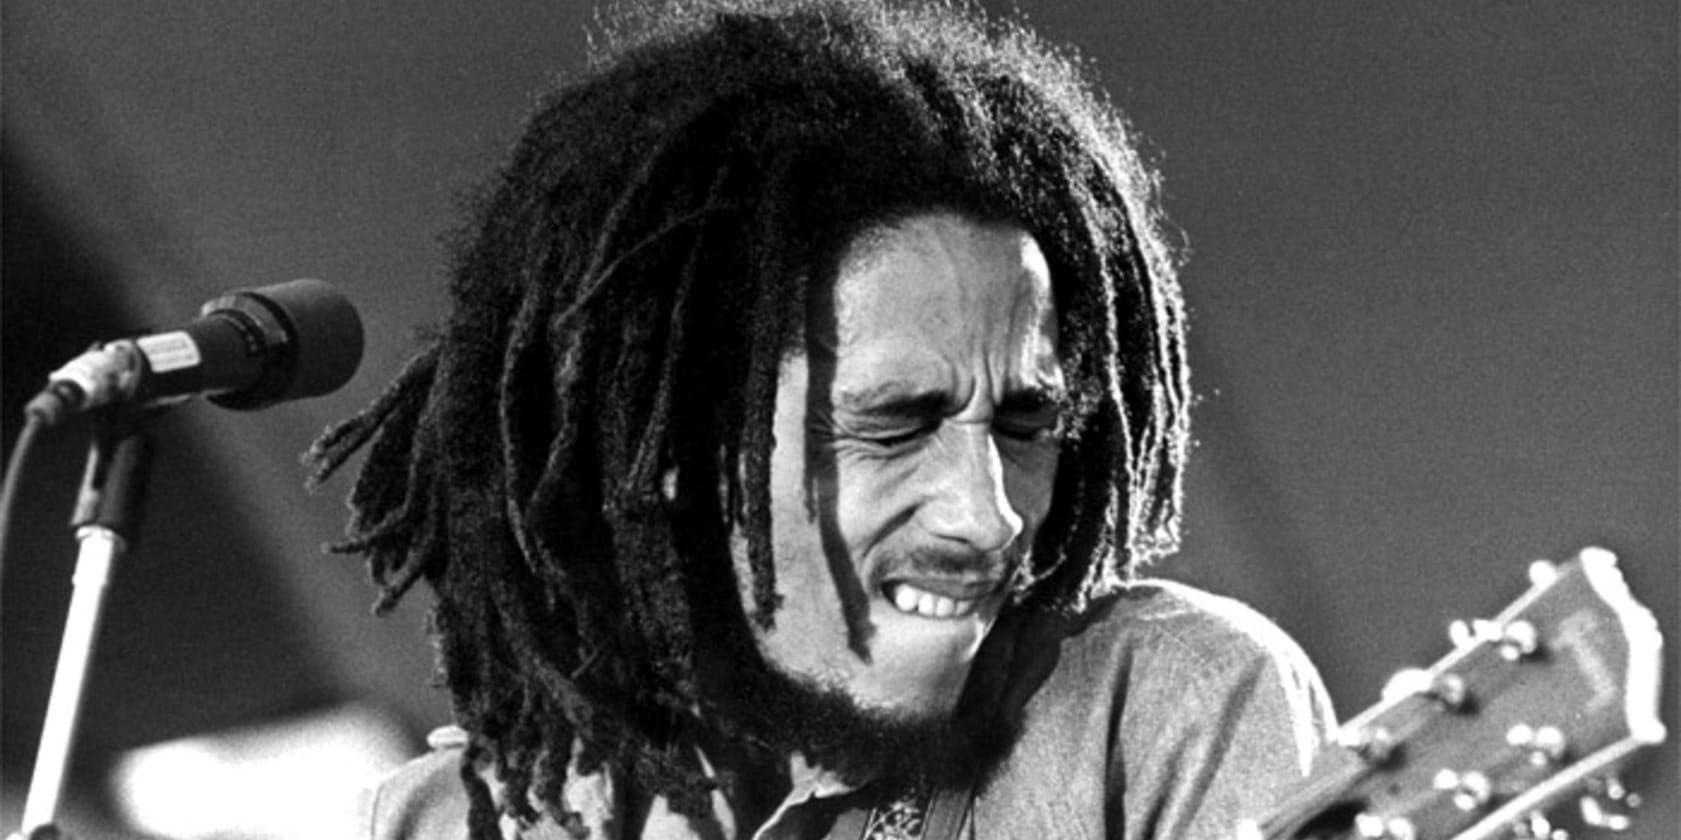 Mordförsöket på Bob Marley utreds i den nya Neflixserien "Remastered". Arkivbild.